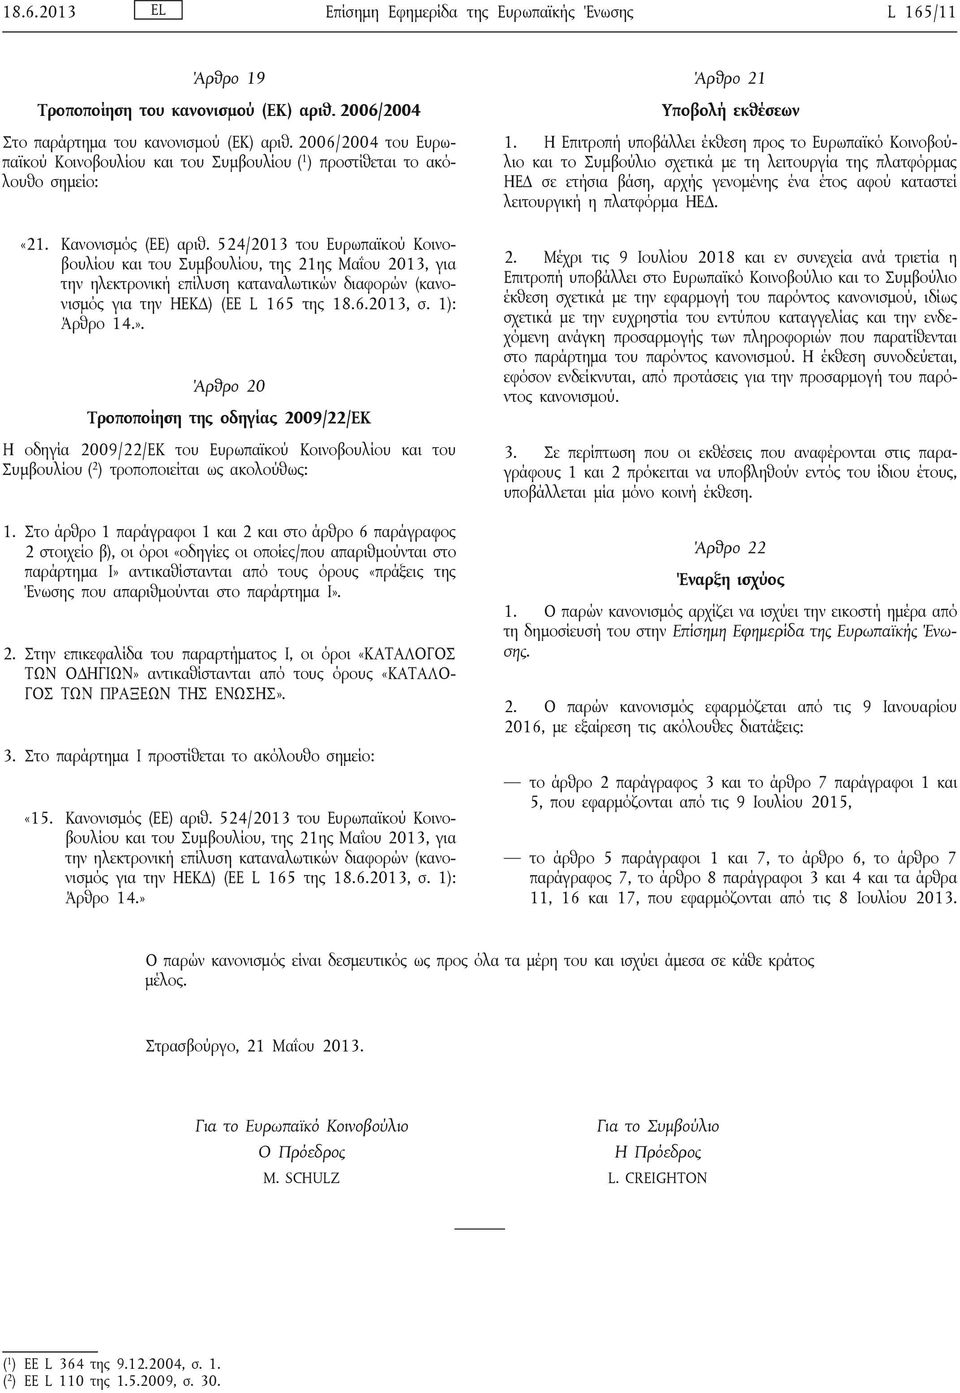 524/2013 του Ευρωπαϊκού Κοινοβουλίου και του Συμβουλίου, της 21ης Μαΐου 2013, για την ηλεκτρονική επίλυση καταναλωτικών διαφορών (κανονισμός για την ΗΕΚΔ) (ΕΕ L 165 της 18.6.2013, σ. 1): Άρθρο 14.».